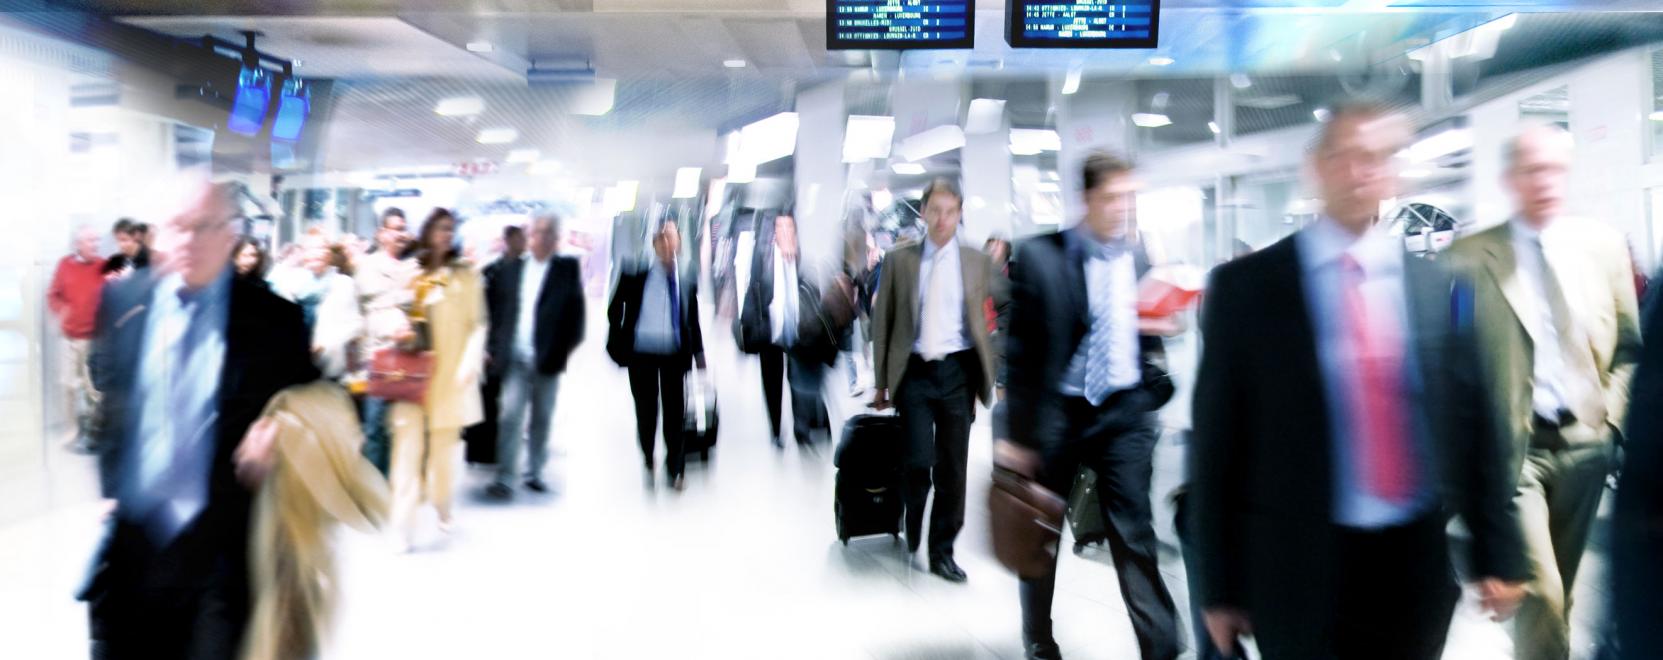 Gyors becsekkolás: biometrikus azonosítás a reptereken